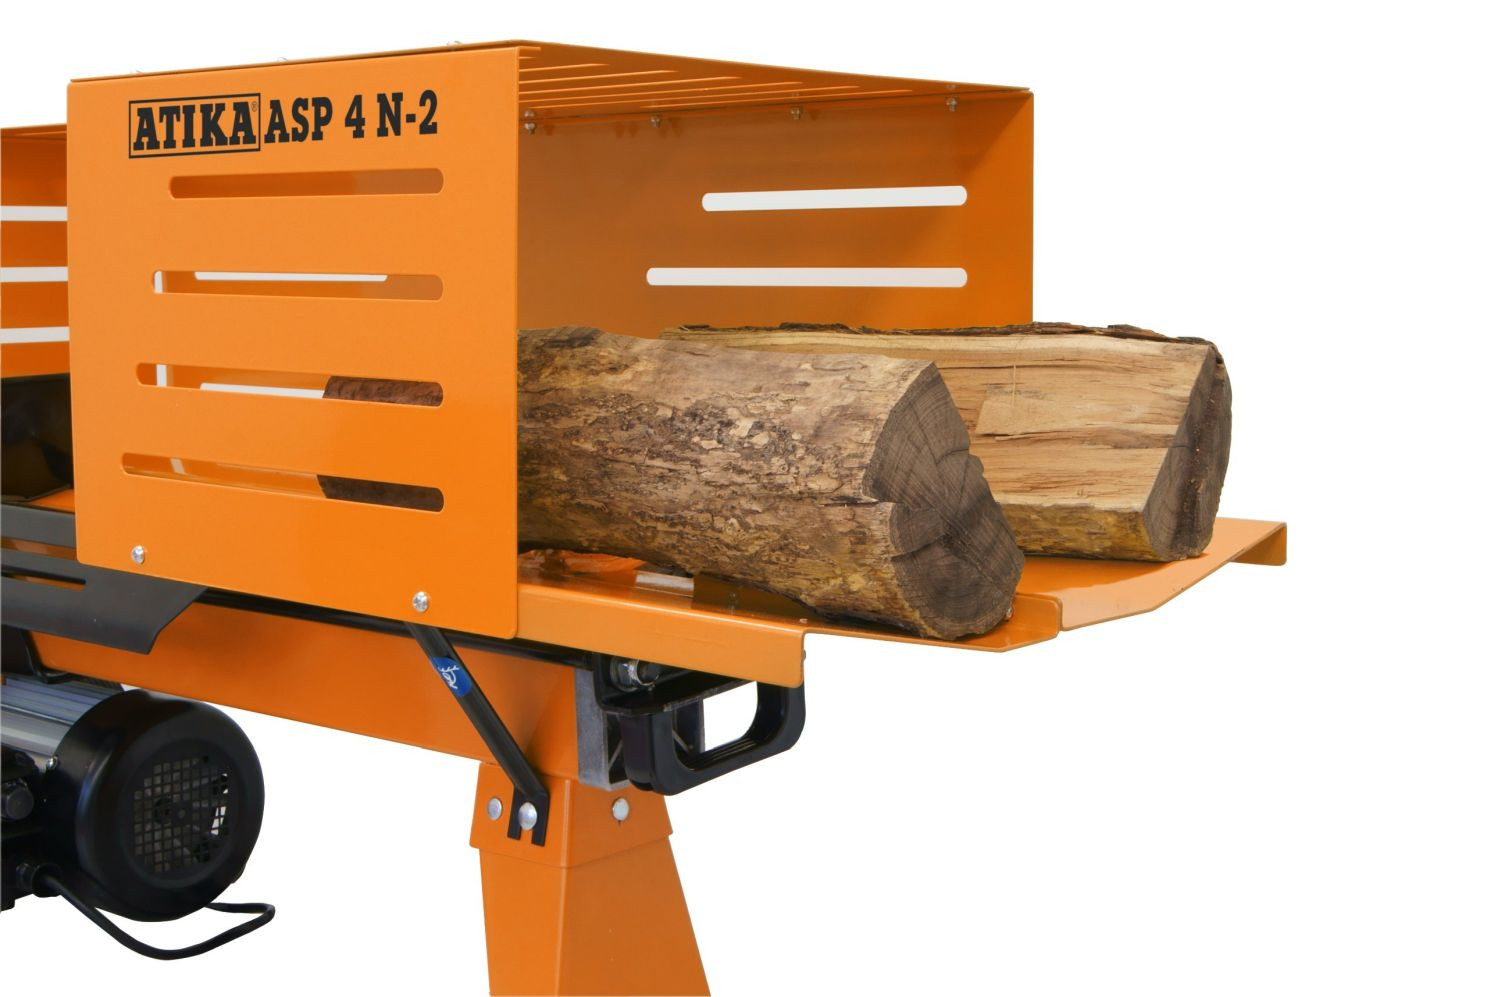 ATIKA ASP 4N-2 Holzspalter Brennholzspalter 230 V kompakte und robuste Bauweise für die bequeme Brennholz-Aufbereitung   